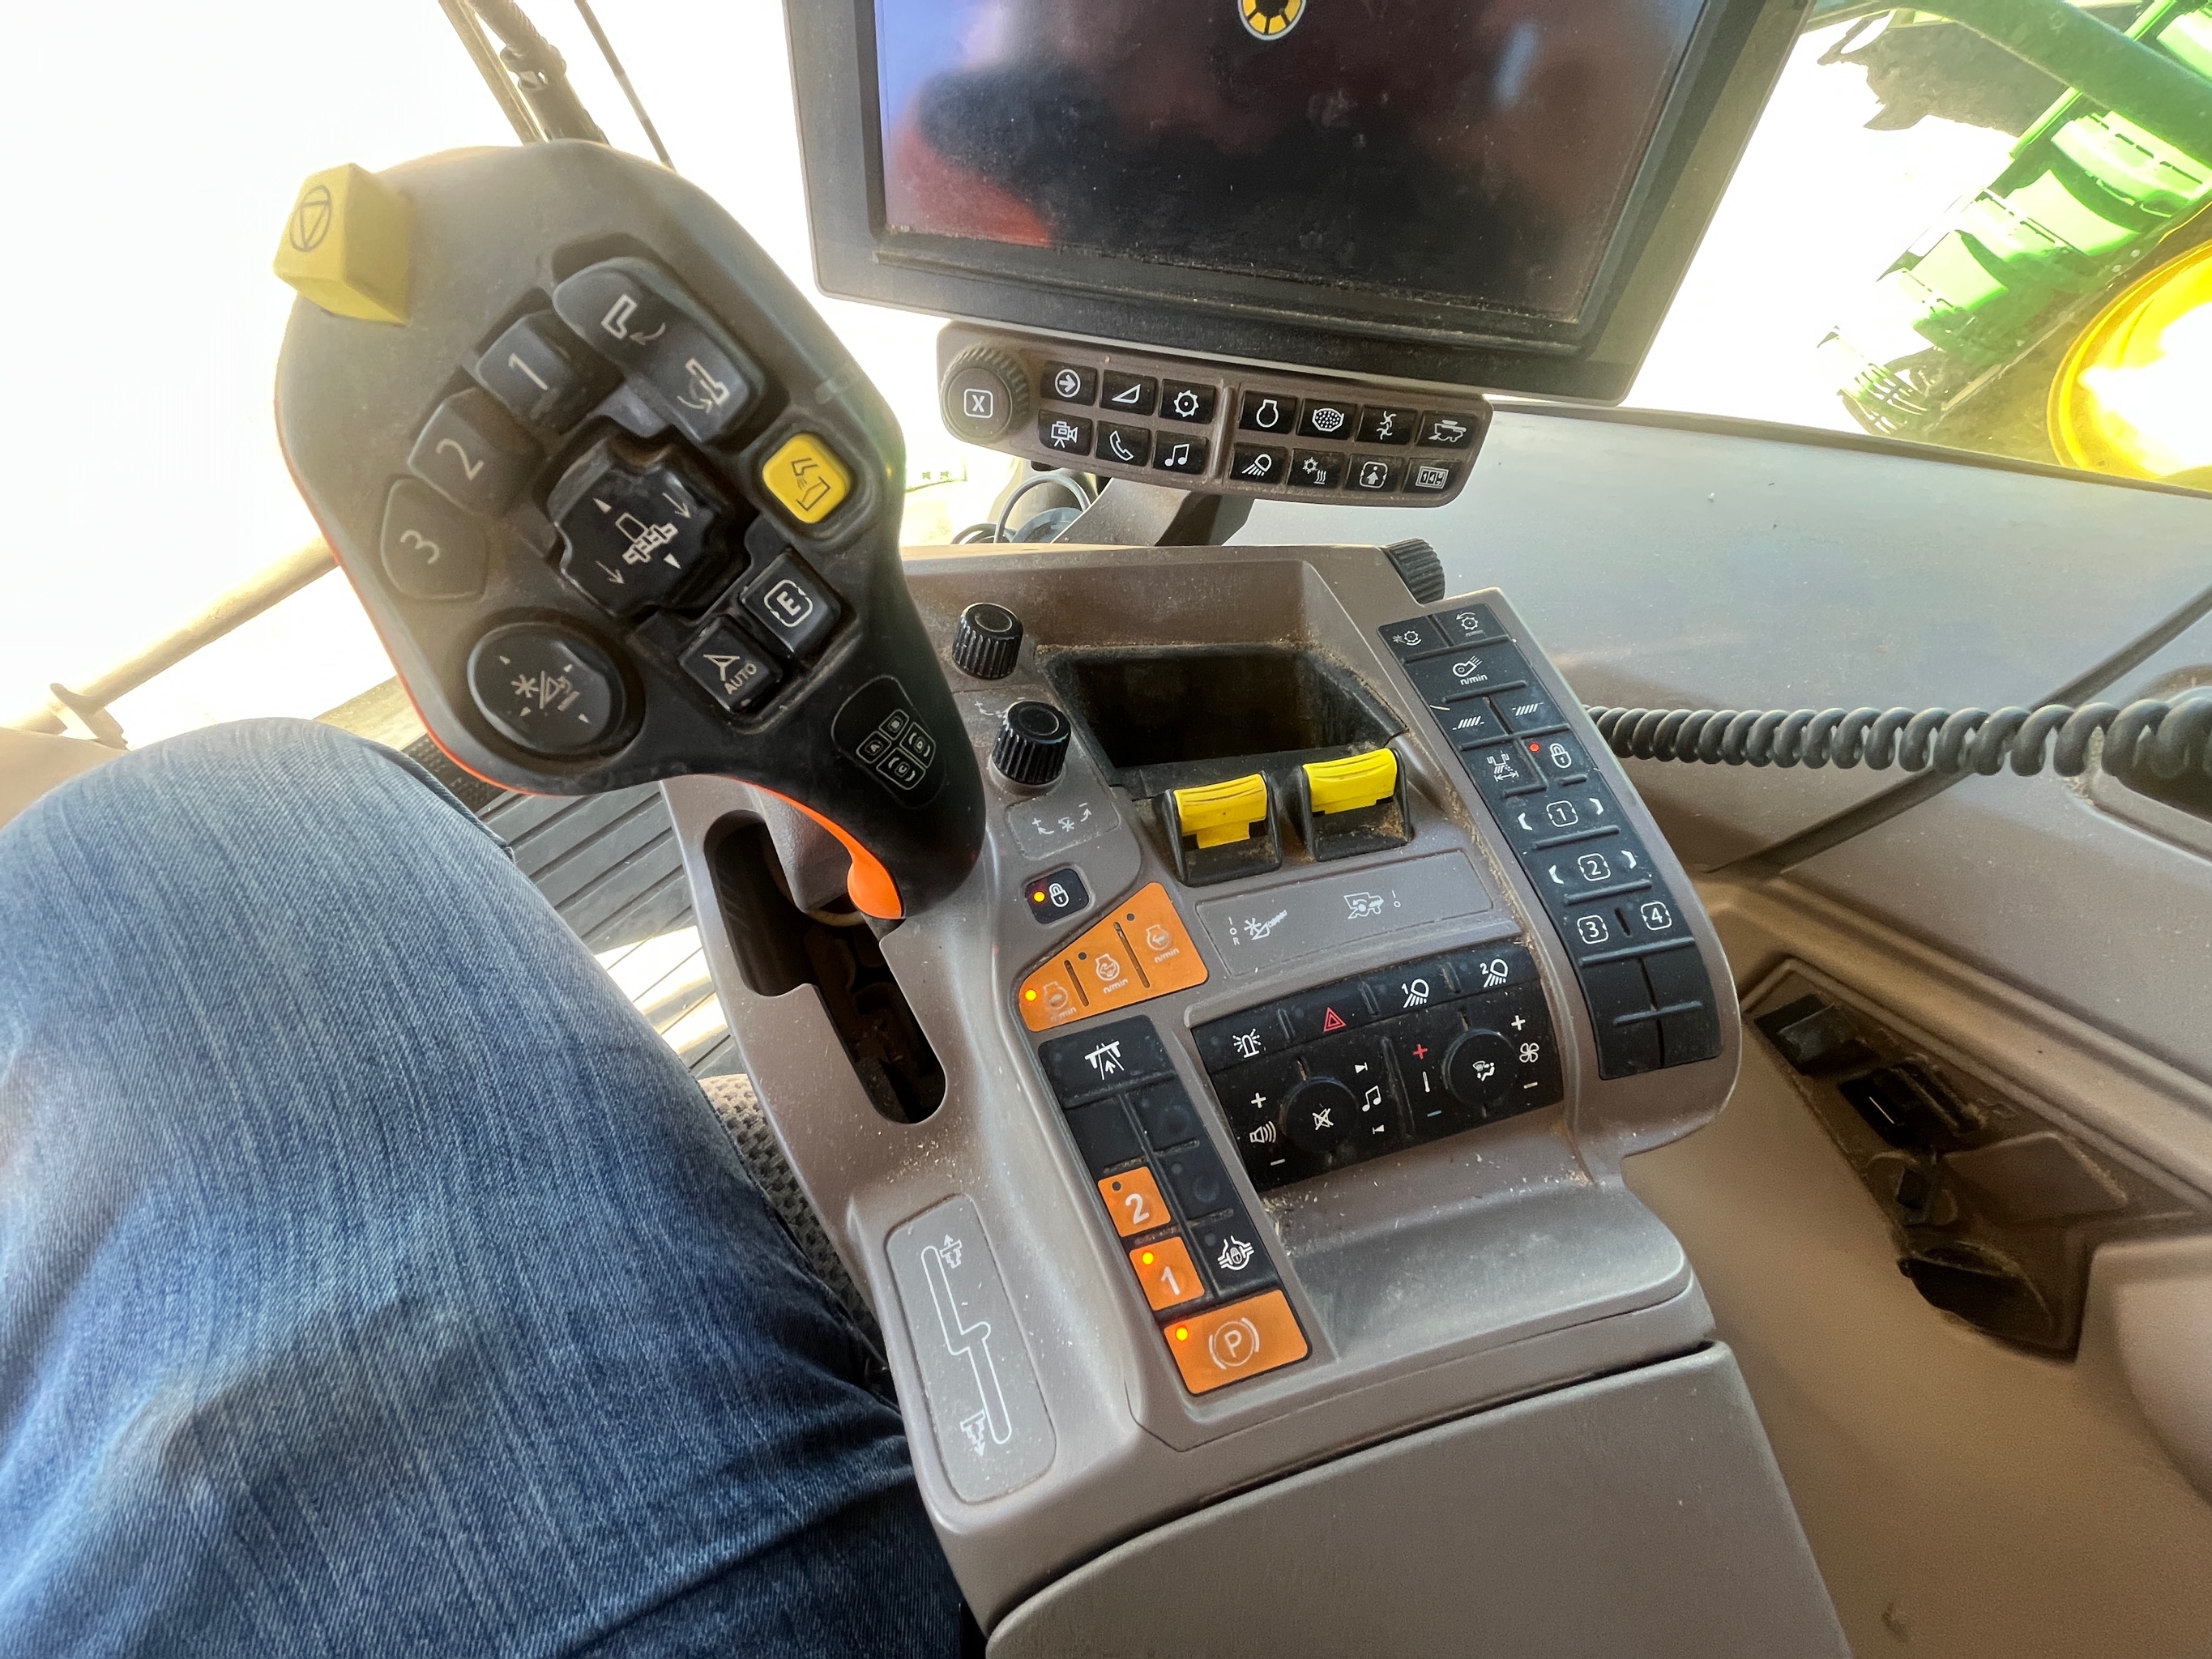 2019 John Deere S770 Combine